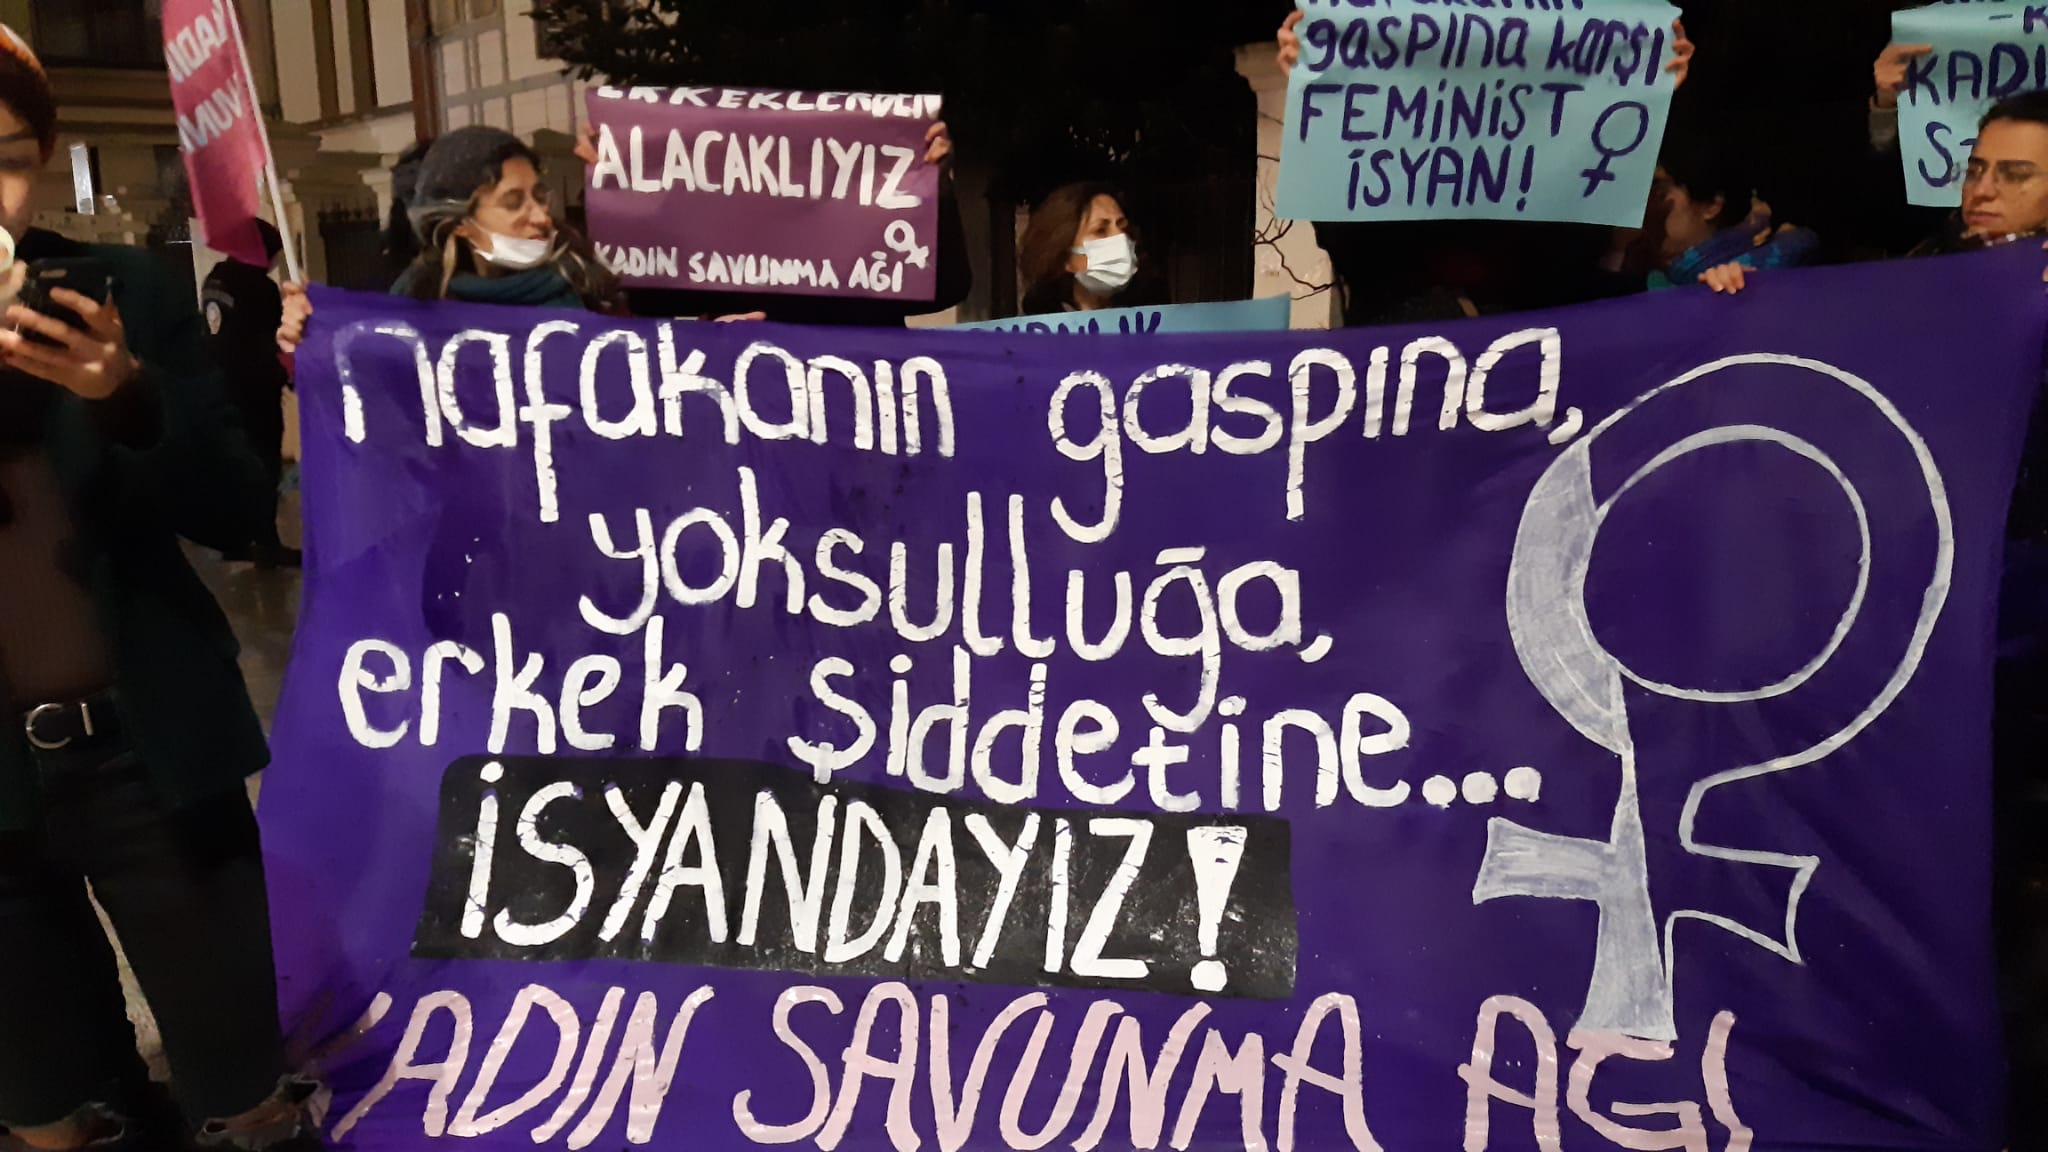 Kadın Savunma Ağı’nda İstanbul’da eylem: Nafakanın gaspına, yoksulluğa, erkek şiddetine İSYANDAYIZ!